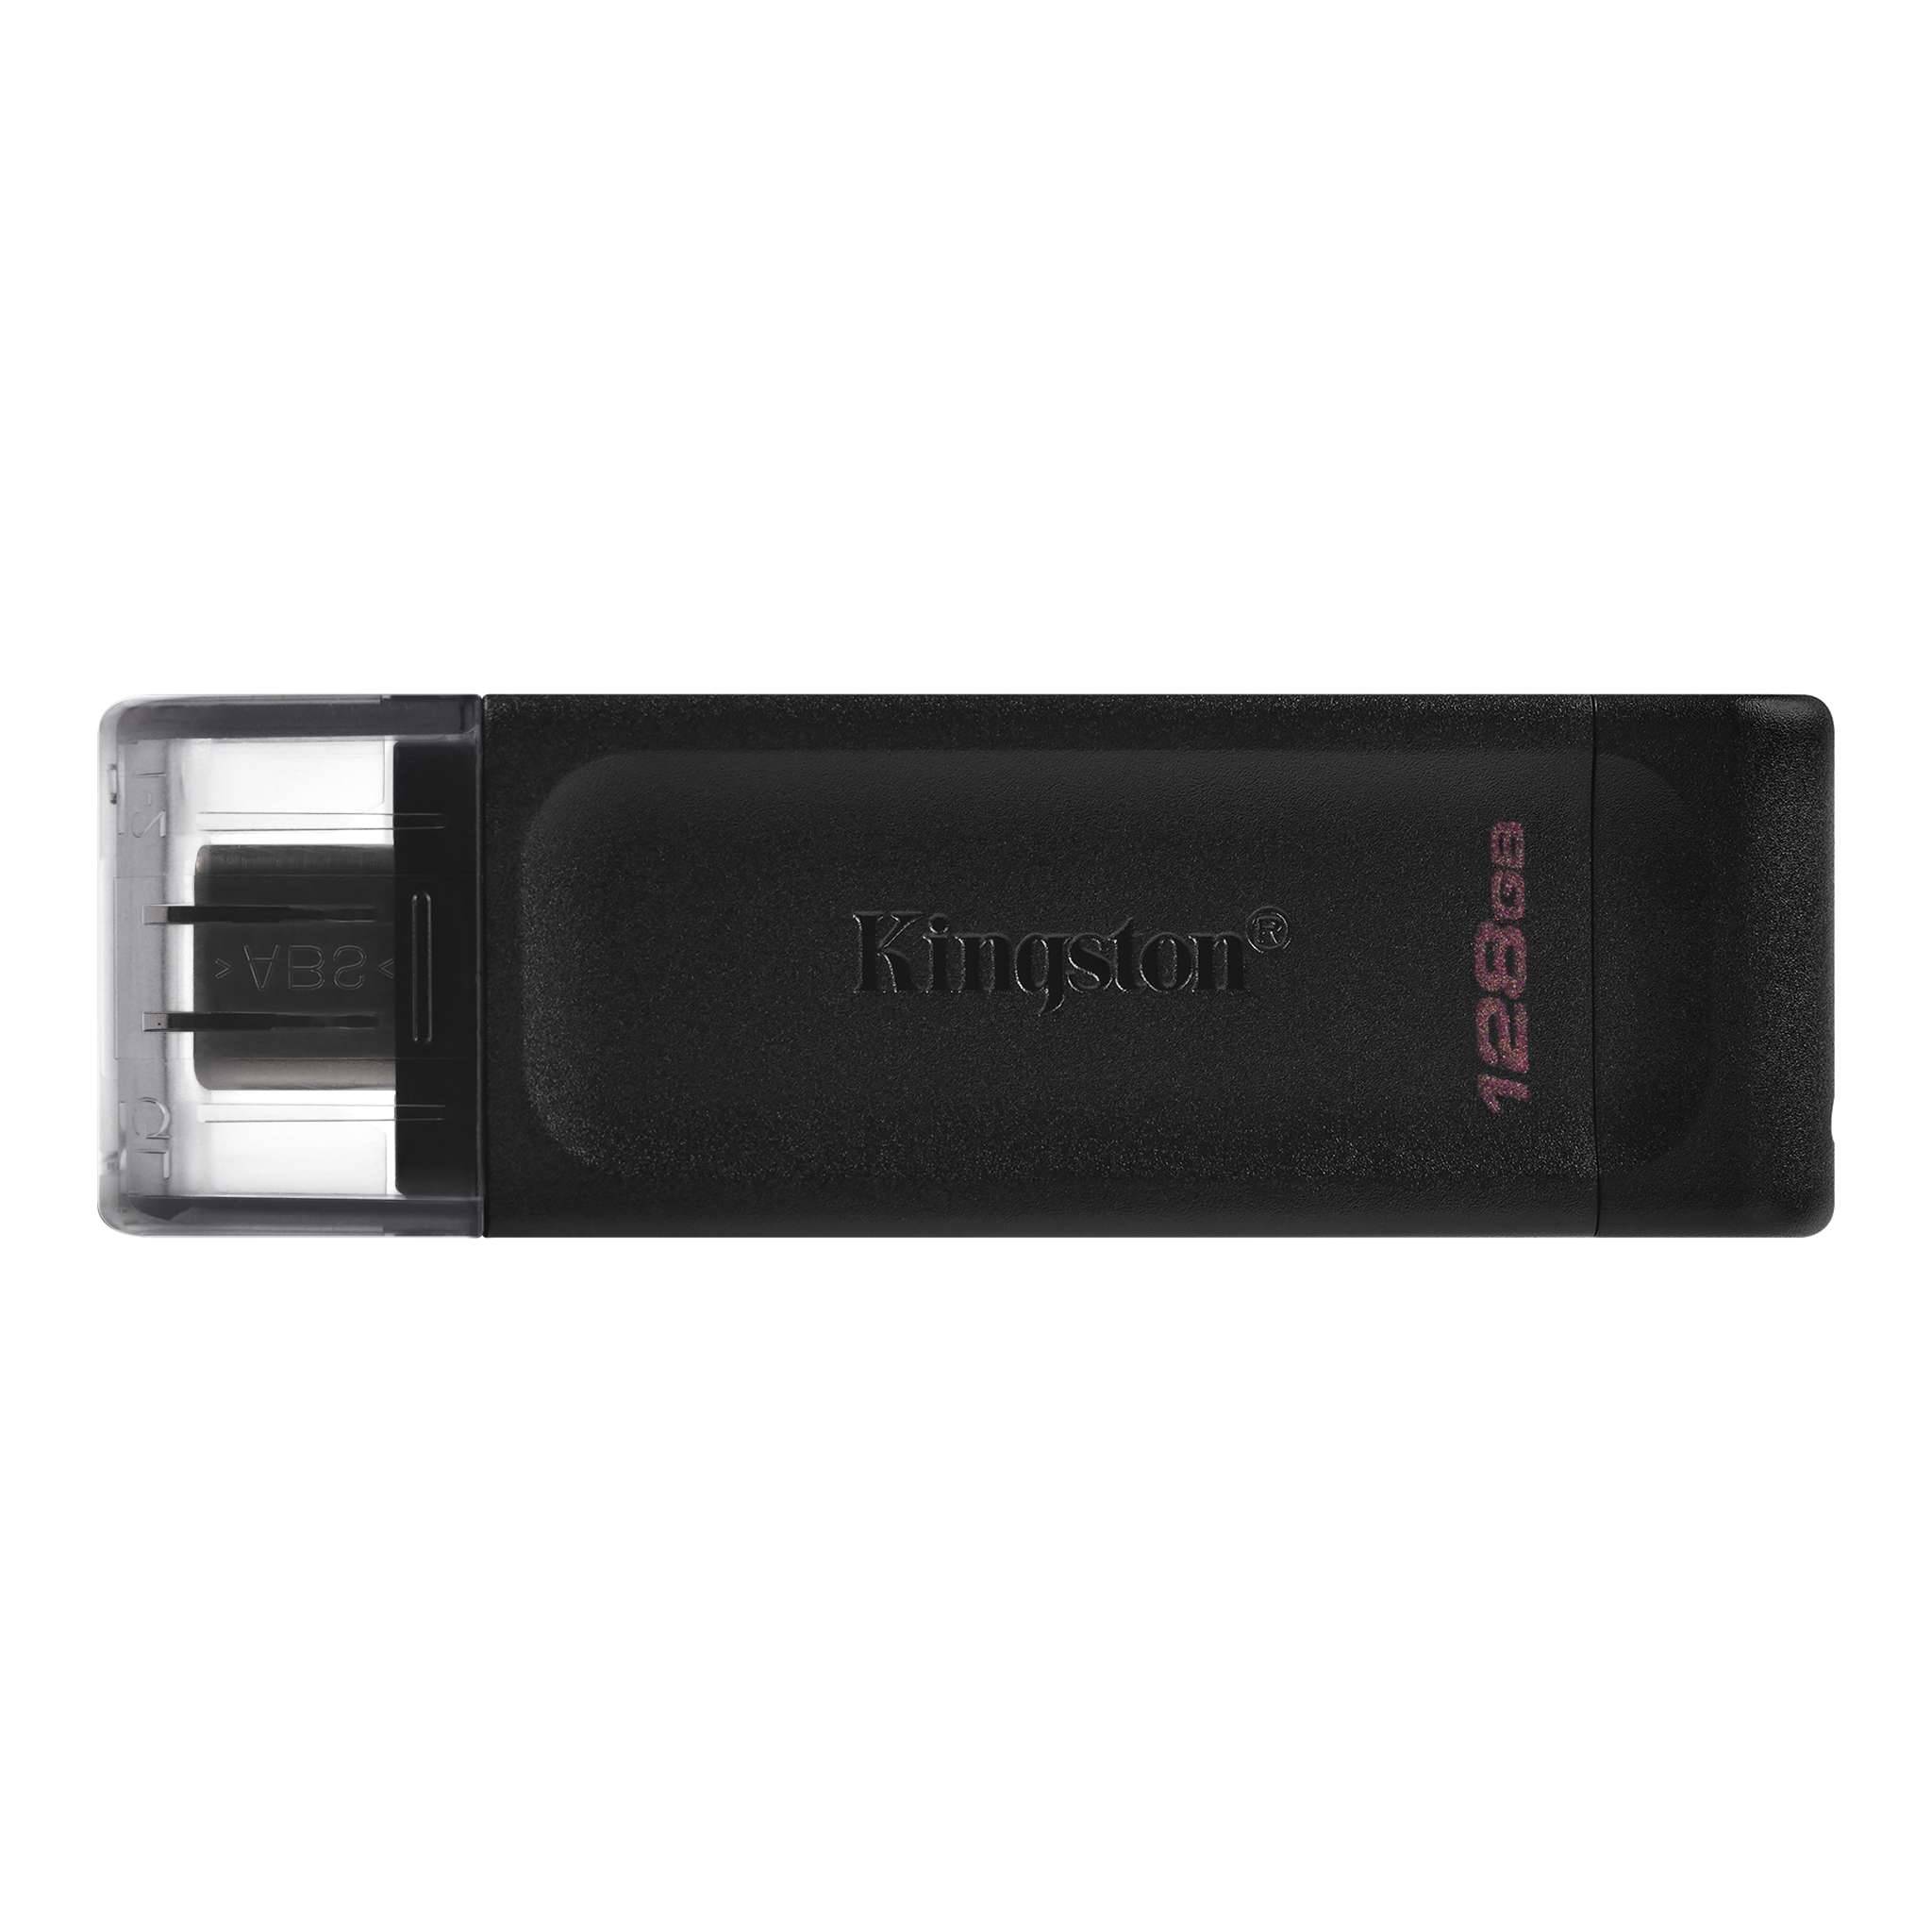 PENDRIVE KINGSTON DT70 128GB USB TYPE C 3.2